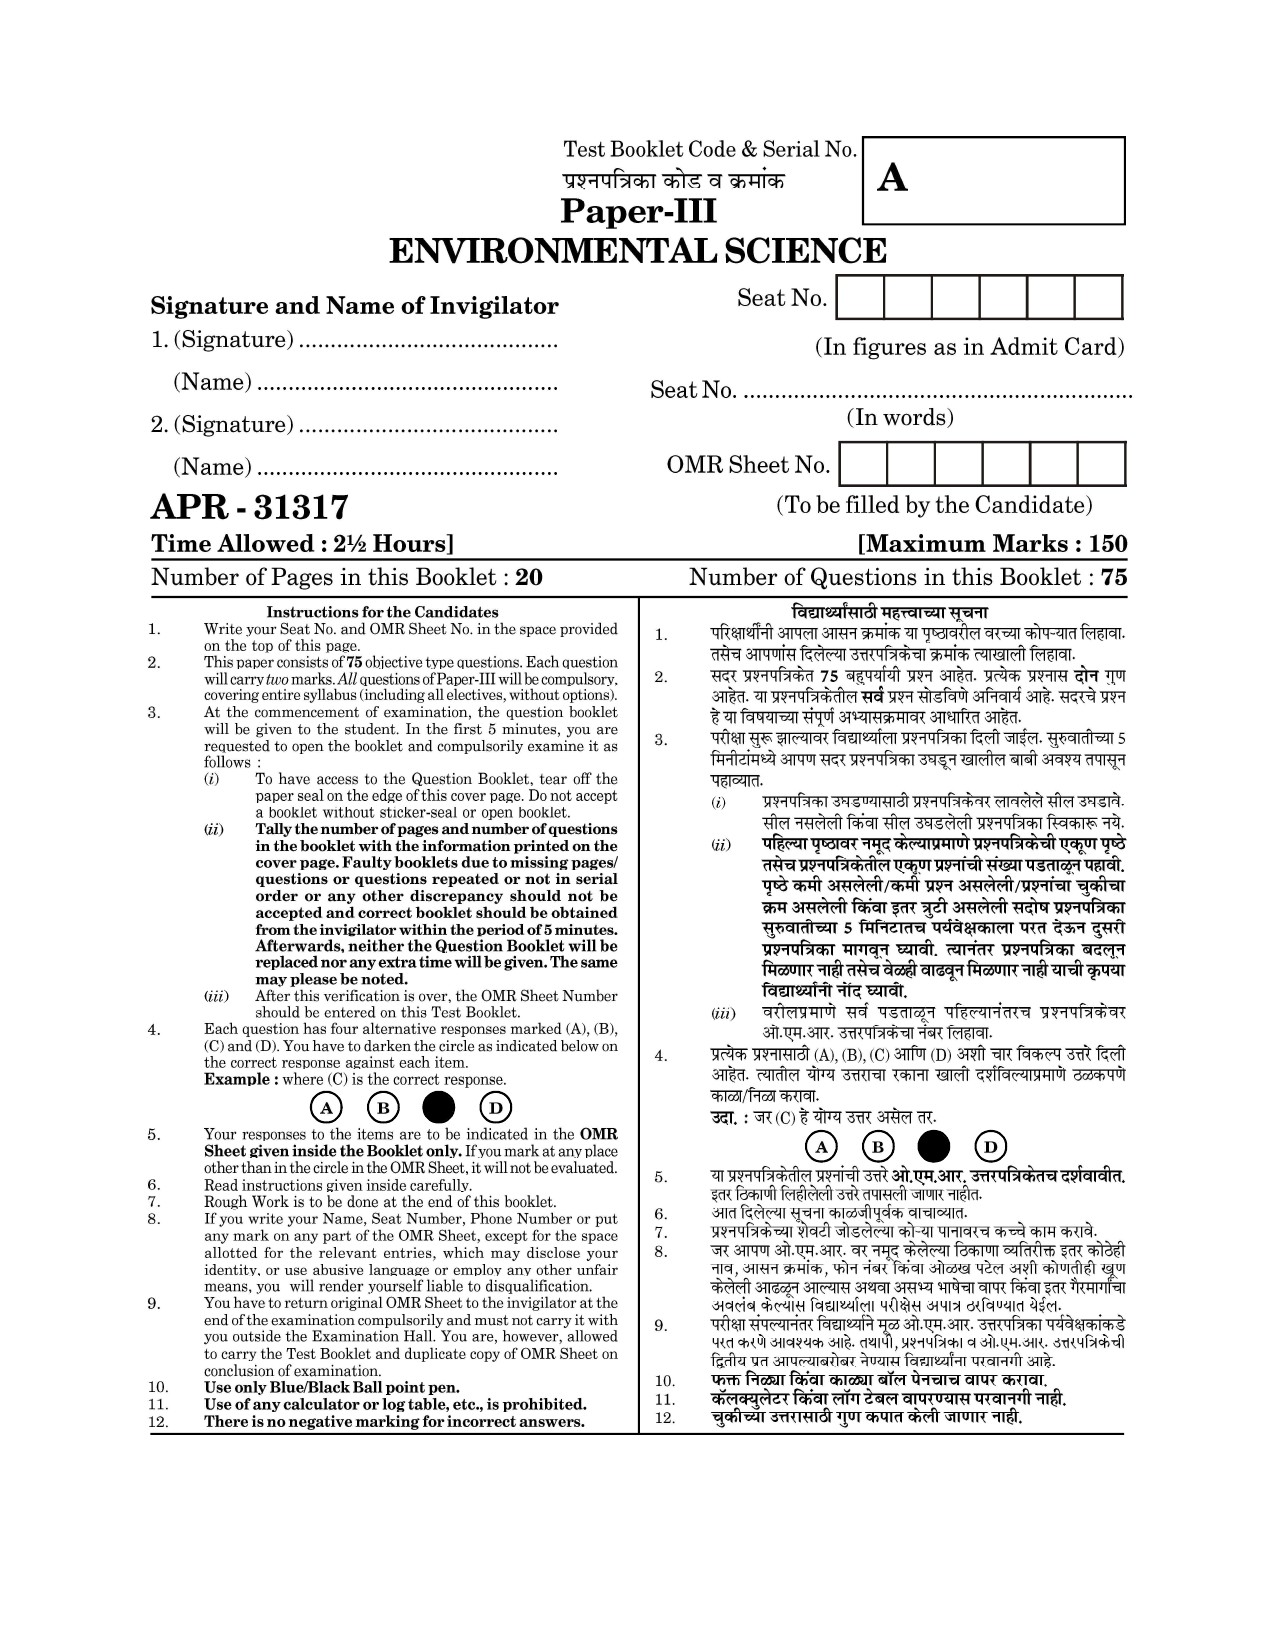 Maharashtra SET Environmental Sciences Question Paper III April 2017 1